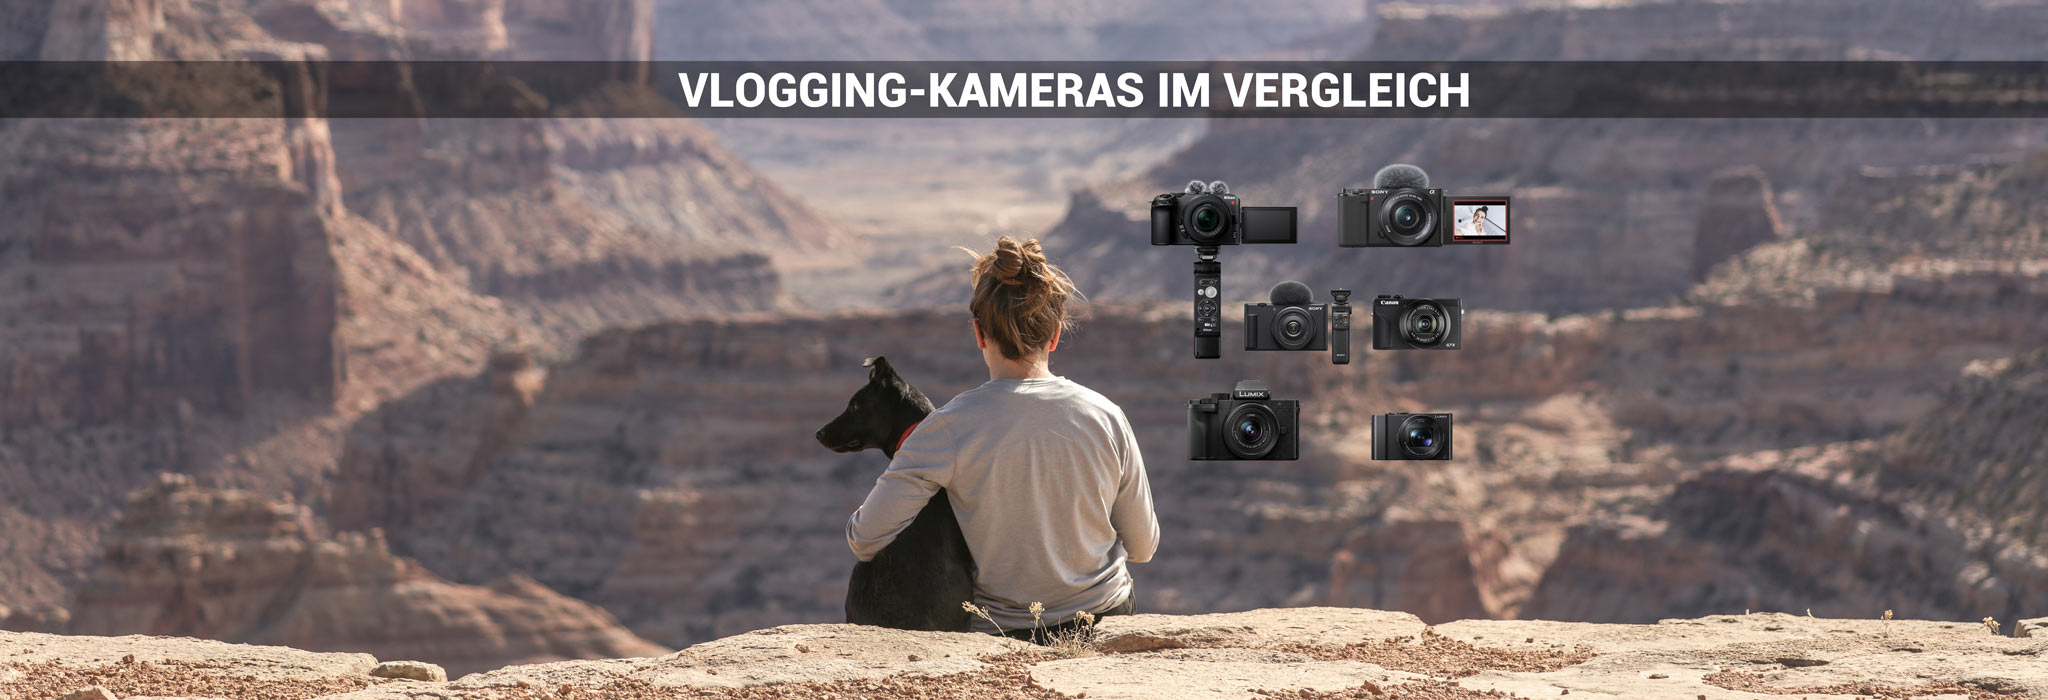 Die Besten 5 Kameras für Vlogging-Einsteiger im Vergleich bei Fotomax